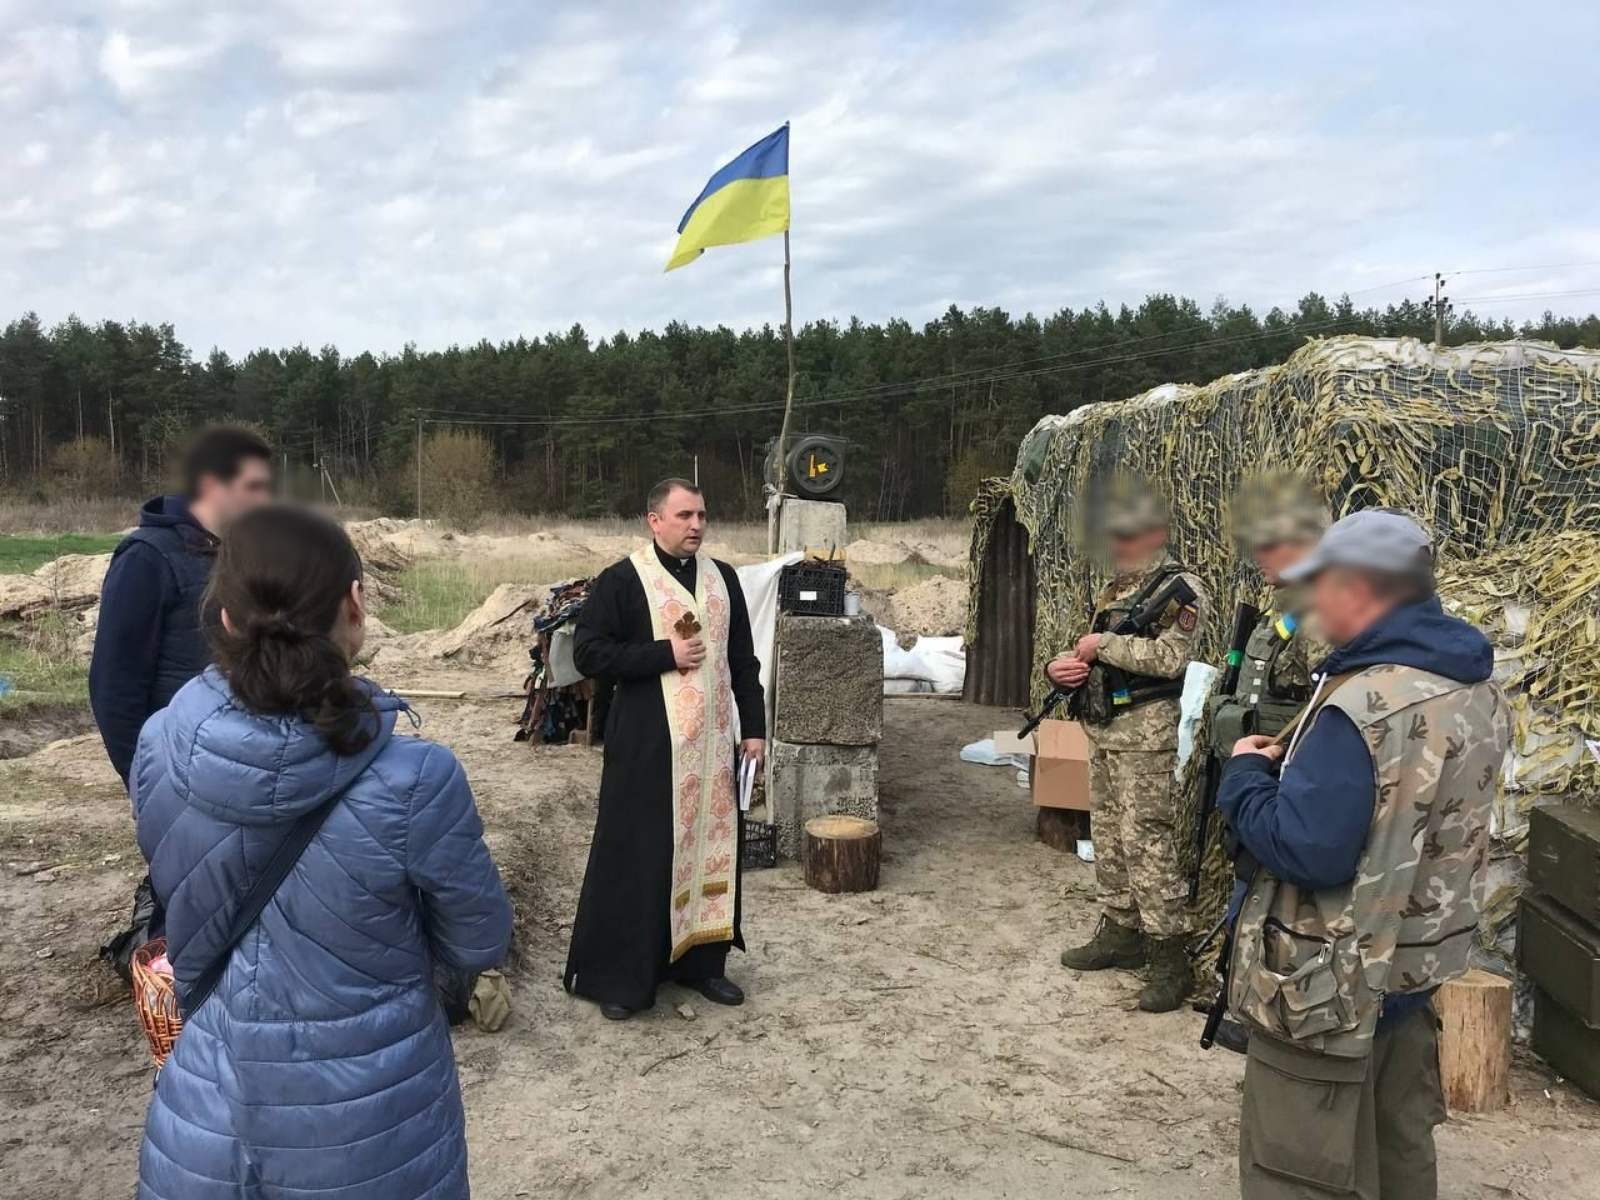 “Vaticaan helpt Oekraïense krijgsgevangen vrij te krijgen”